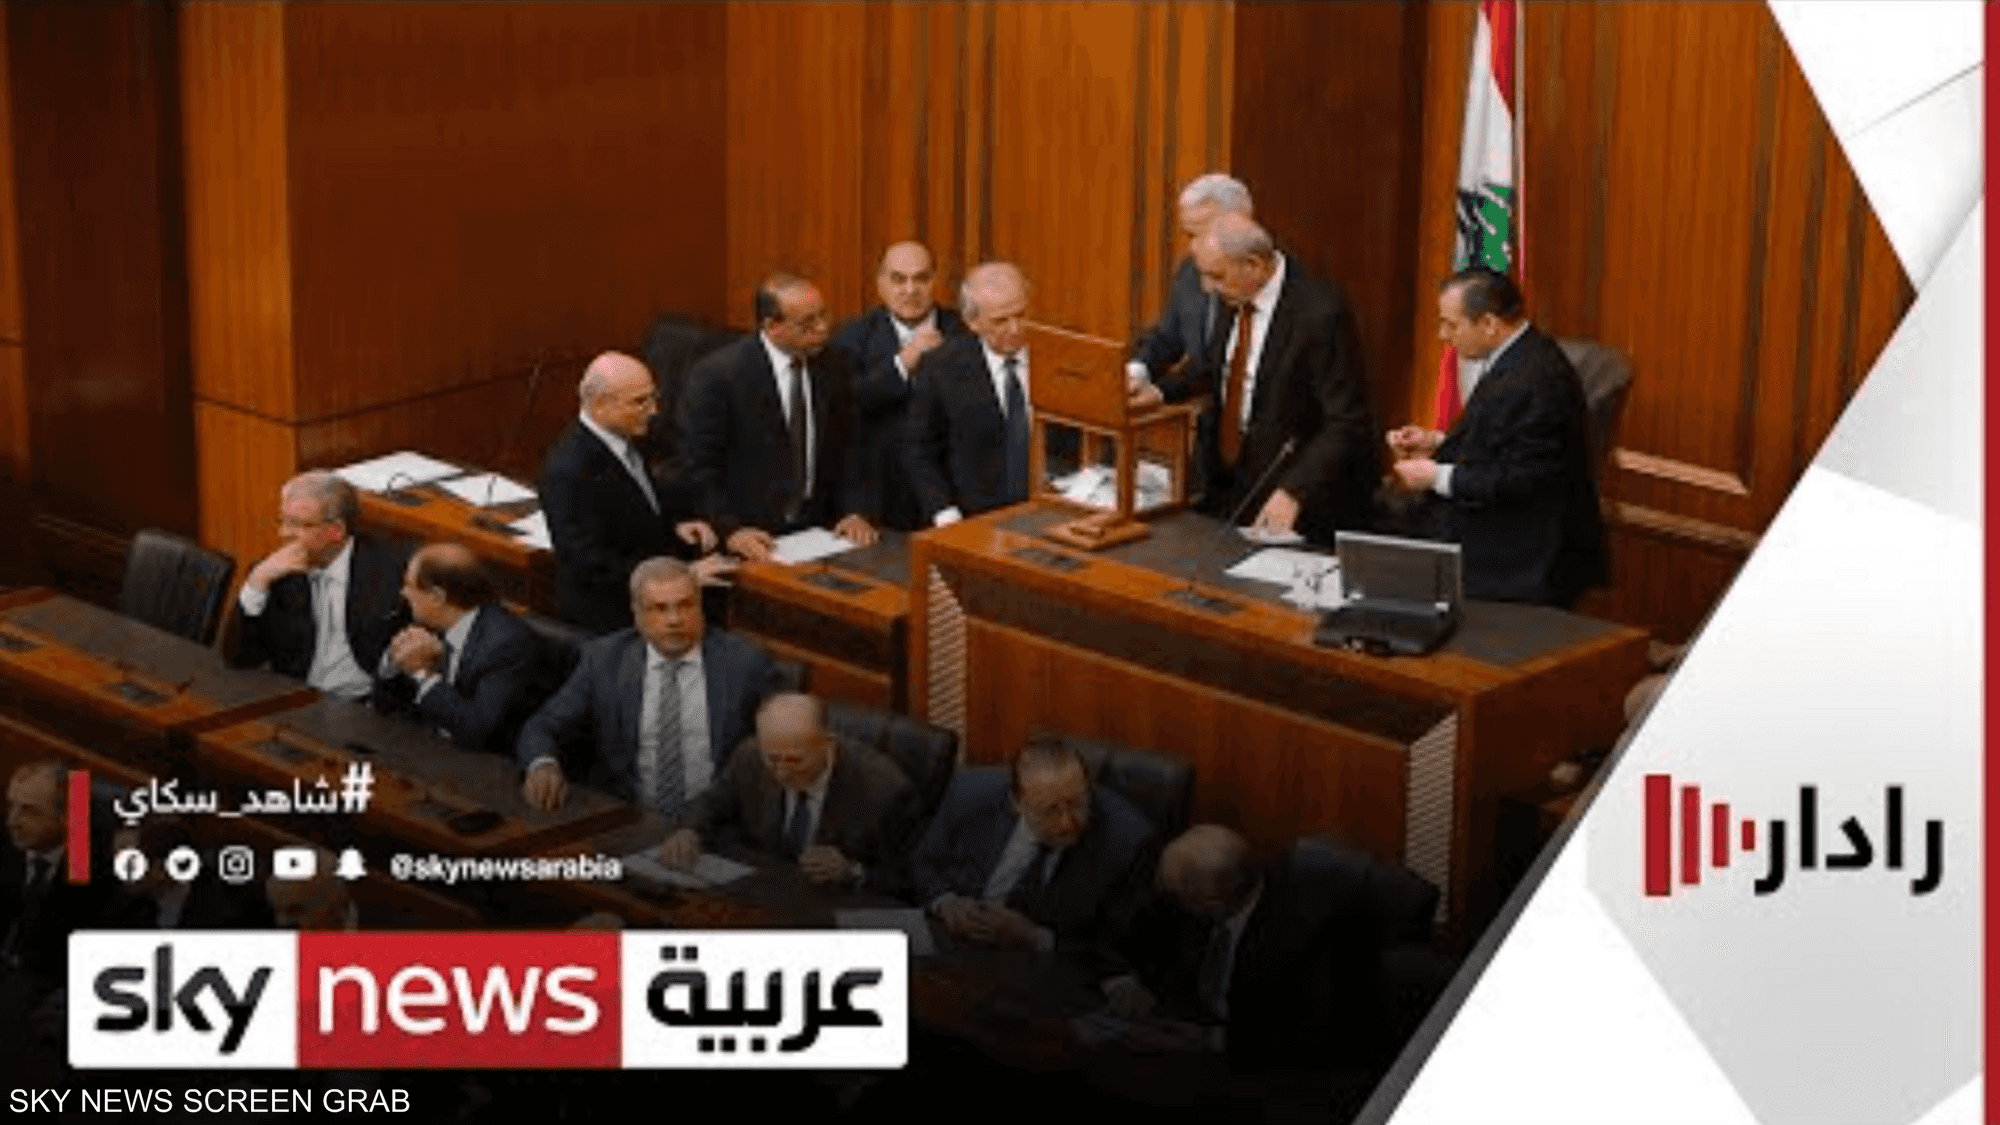 البرلمان اللبناني يحدد 27 مارس المقبل موعدا للانتخابات